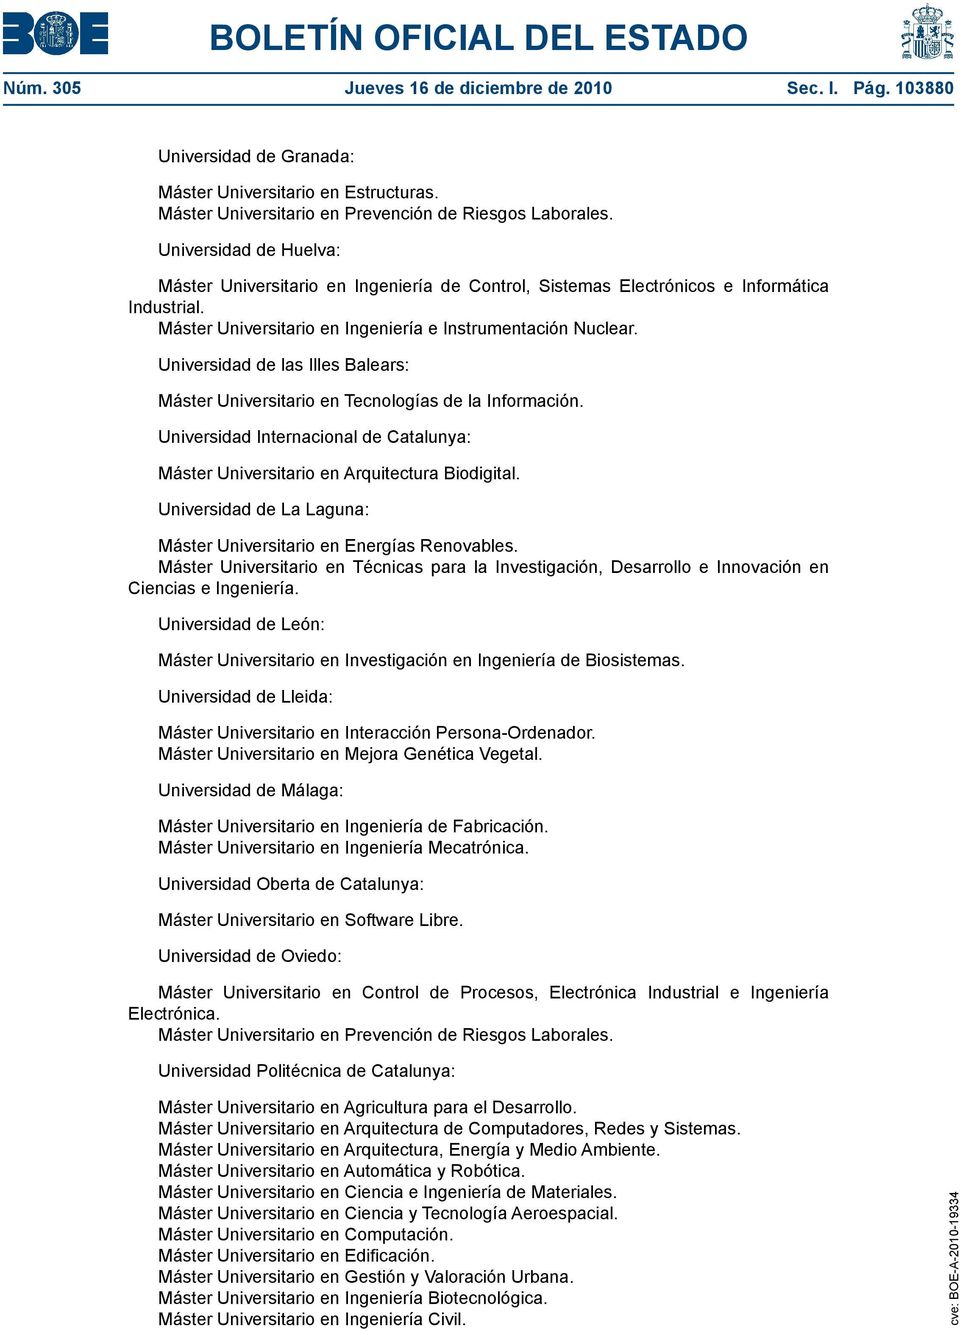 Universidad de las Illes Balears: Máster Universitario en Tecnologías de la Información. Universidad Internacional de Catalunya: Máster Universitario en Arquitectura Biodigital.